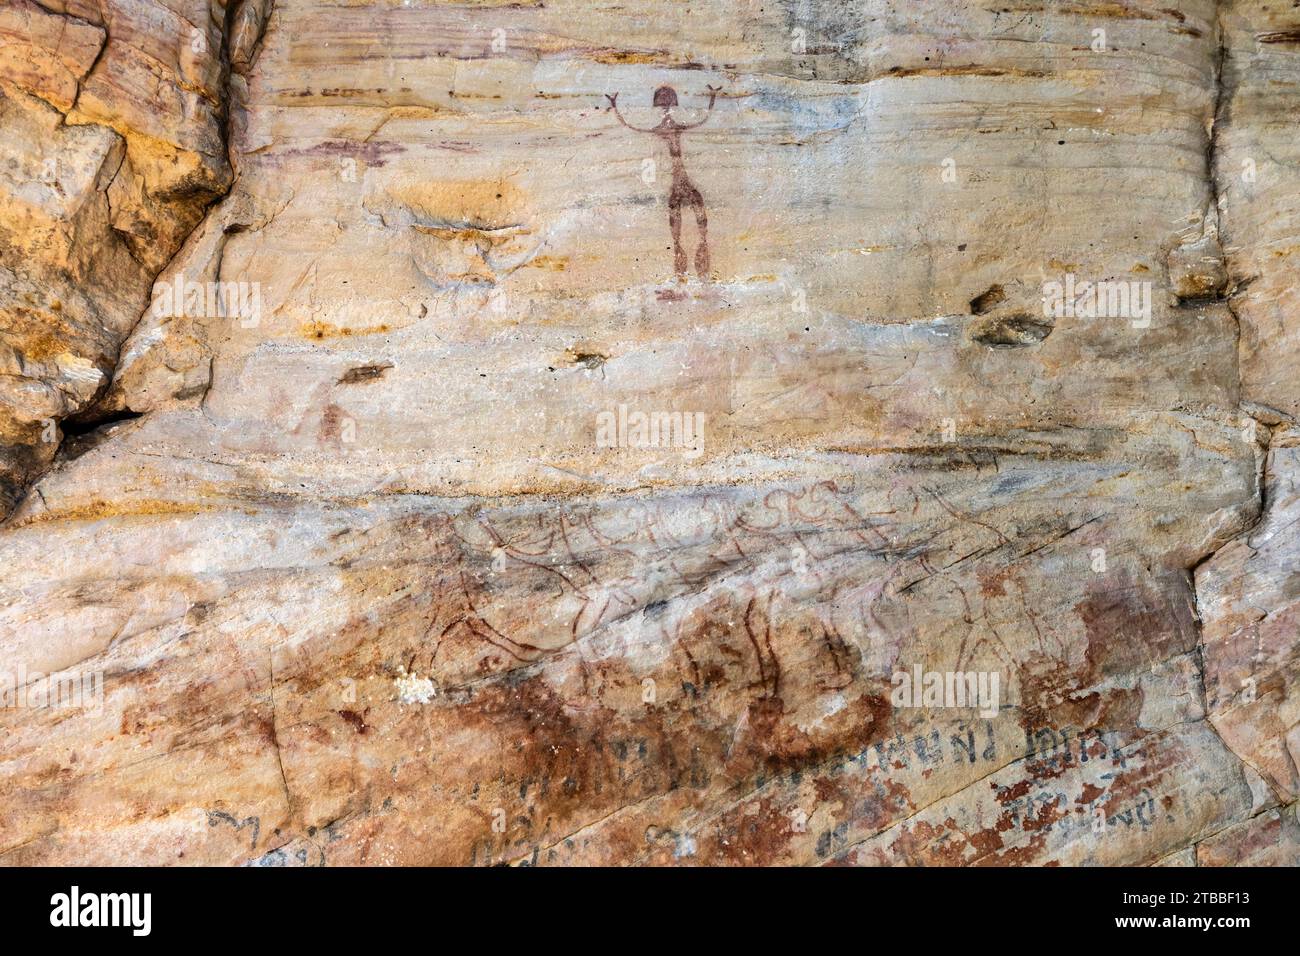 PHA Phak WAN, peintures rupestres préhistoriques à énorme rocher, district de Song Dao, Sakon Nakhon, Isan, Thaïlande, Asie du Sud-est, Asie Banque D'Images